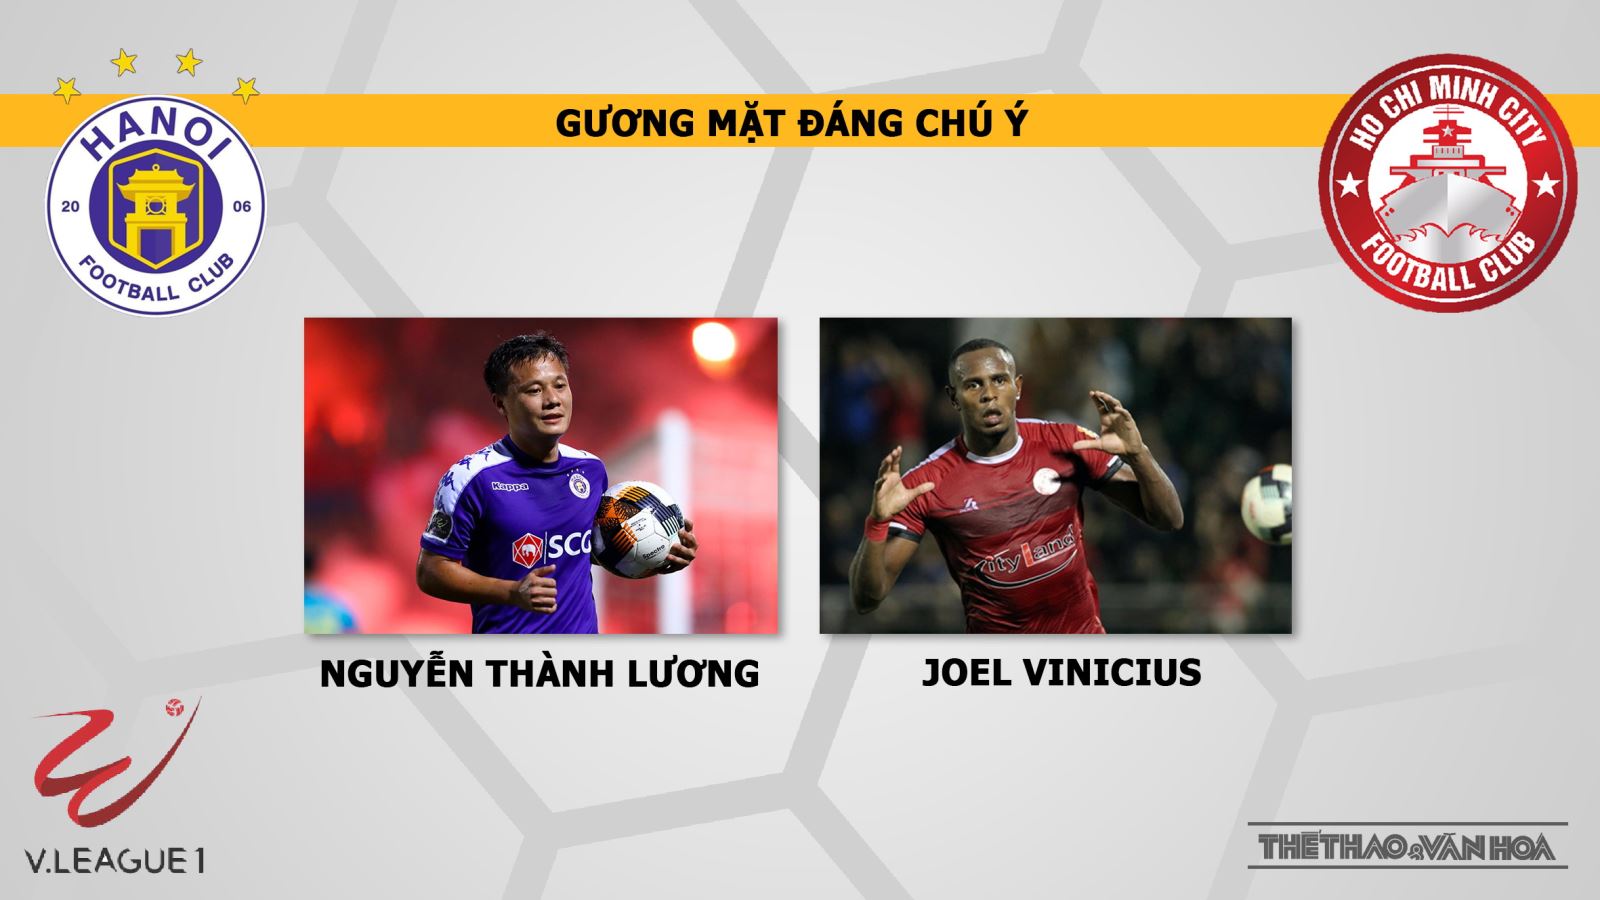 Hà Nội vs TPHCM, Hà Nội FC, TPHCM, truc tiep bong da, trực tiếp bóng đá, truc tiep Hà Nội, truc tiep Ha Noi vs TPHCM, v league 2019, truc tiep v league, VTV6, BDTV, FPT